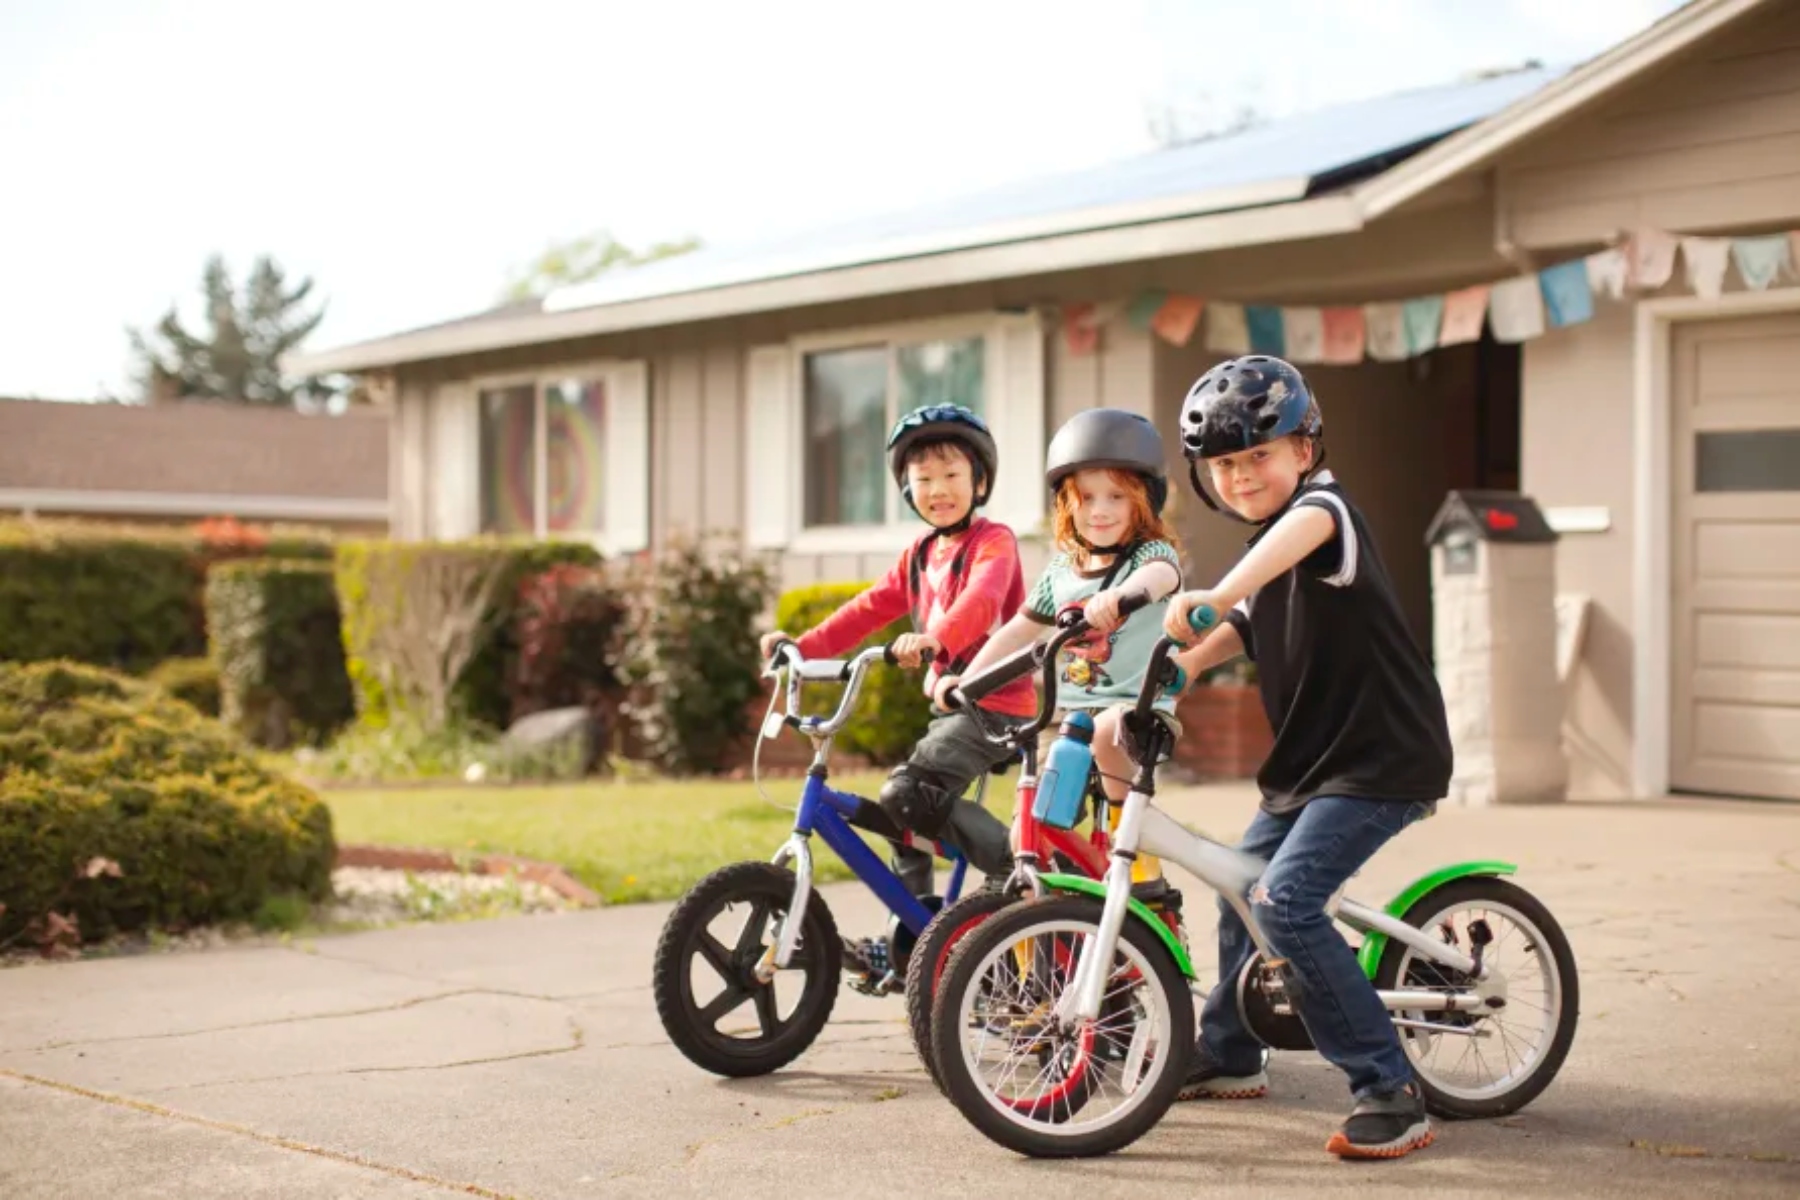 Εγκεφαλική παράλυση ποδήλατο: Πώς ωφελούνται τα παιδιά με εγκεφαλική παράλυση από το ποδήλατο;